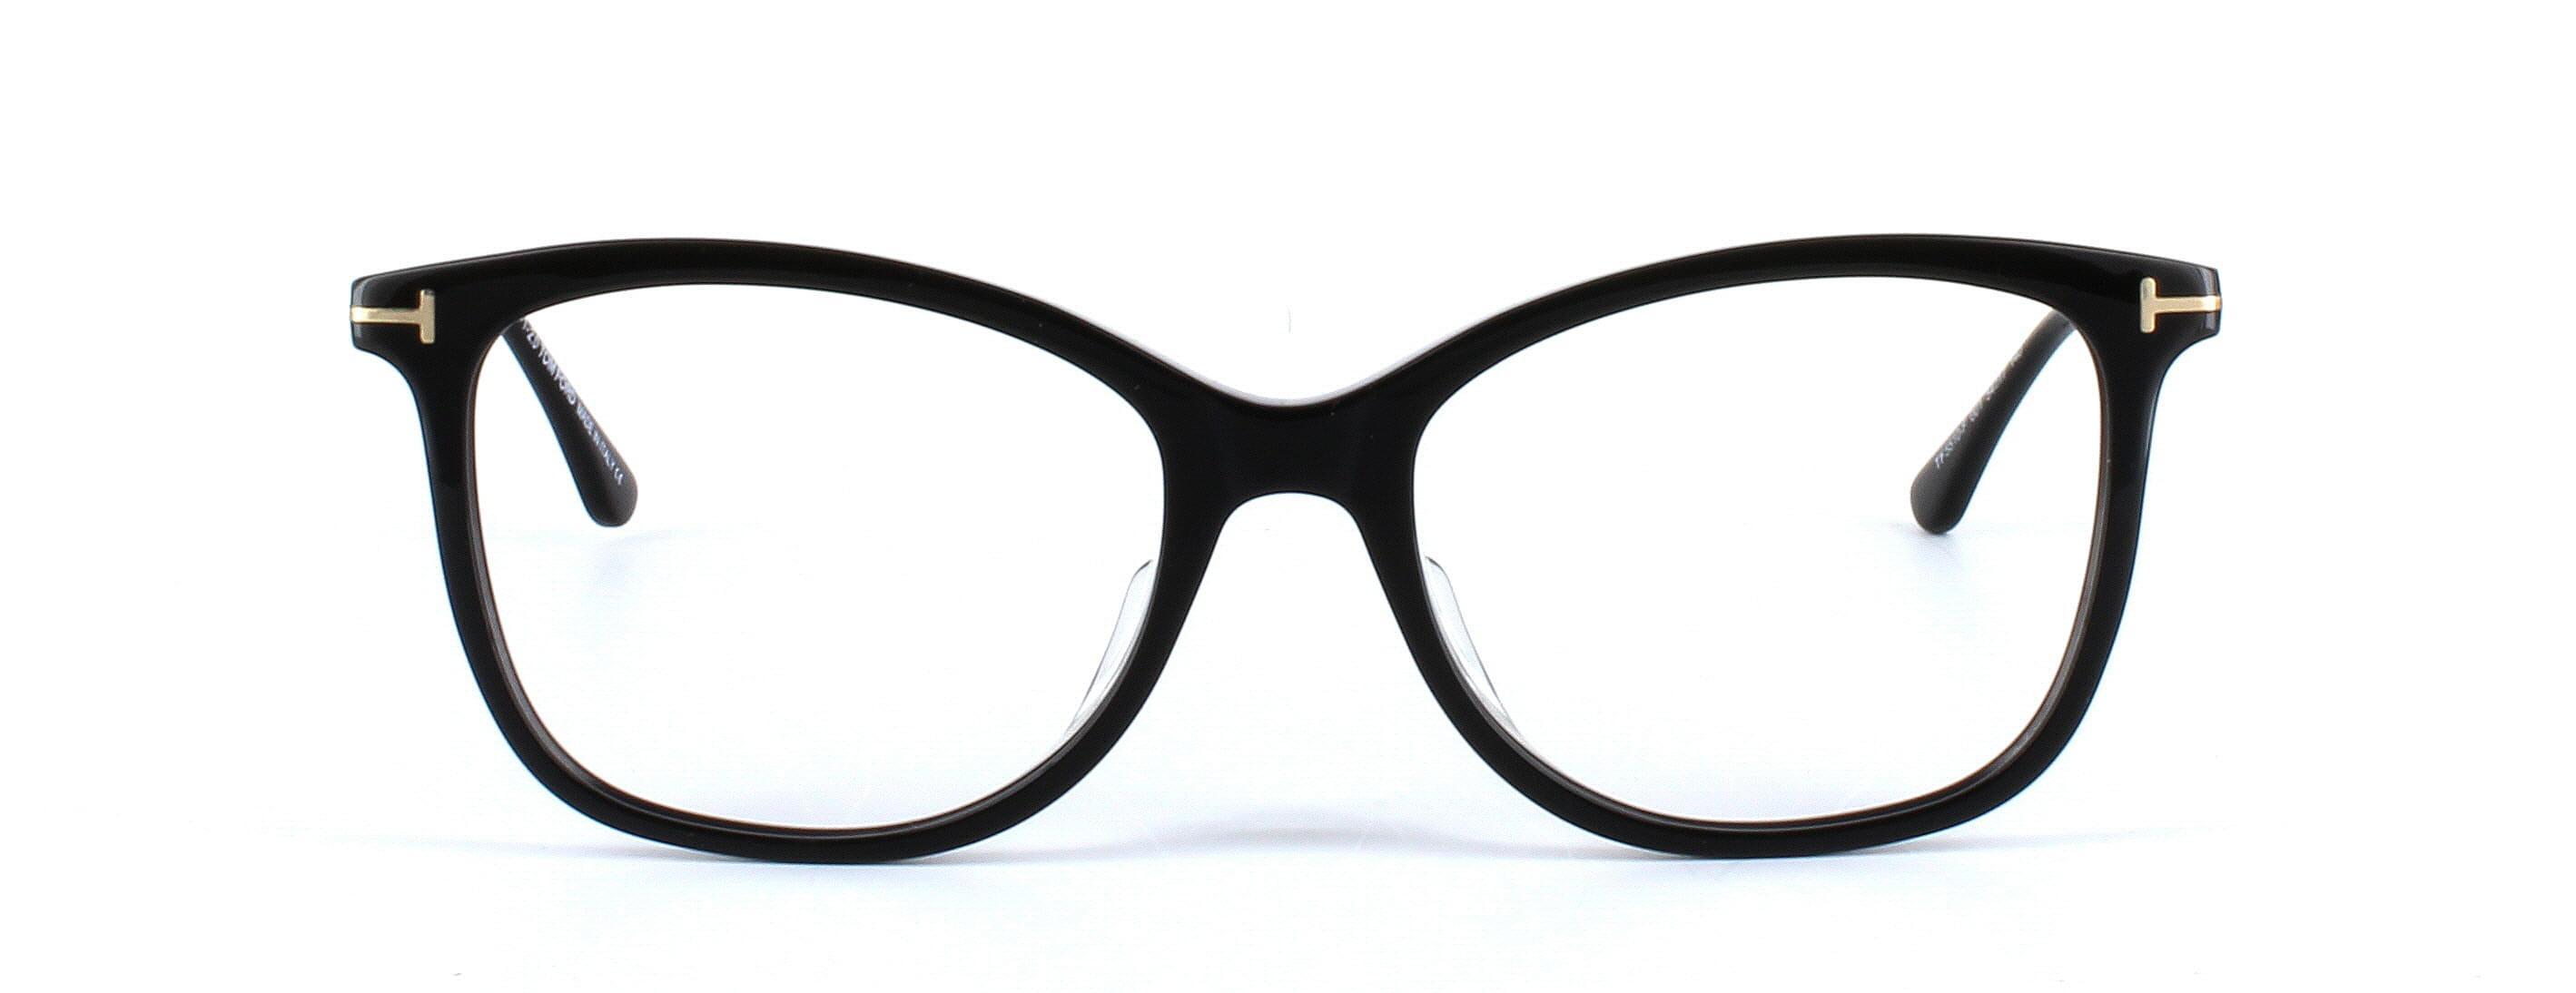 Tom Ford 5510 - Women's black acetate glasses - image 5